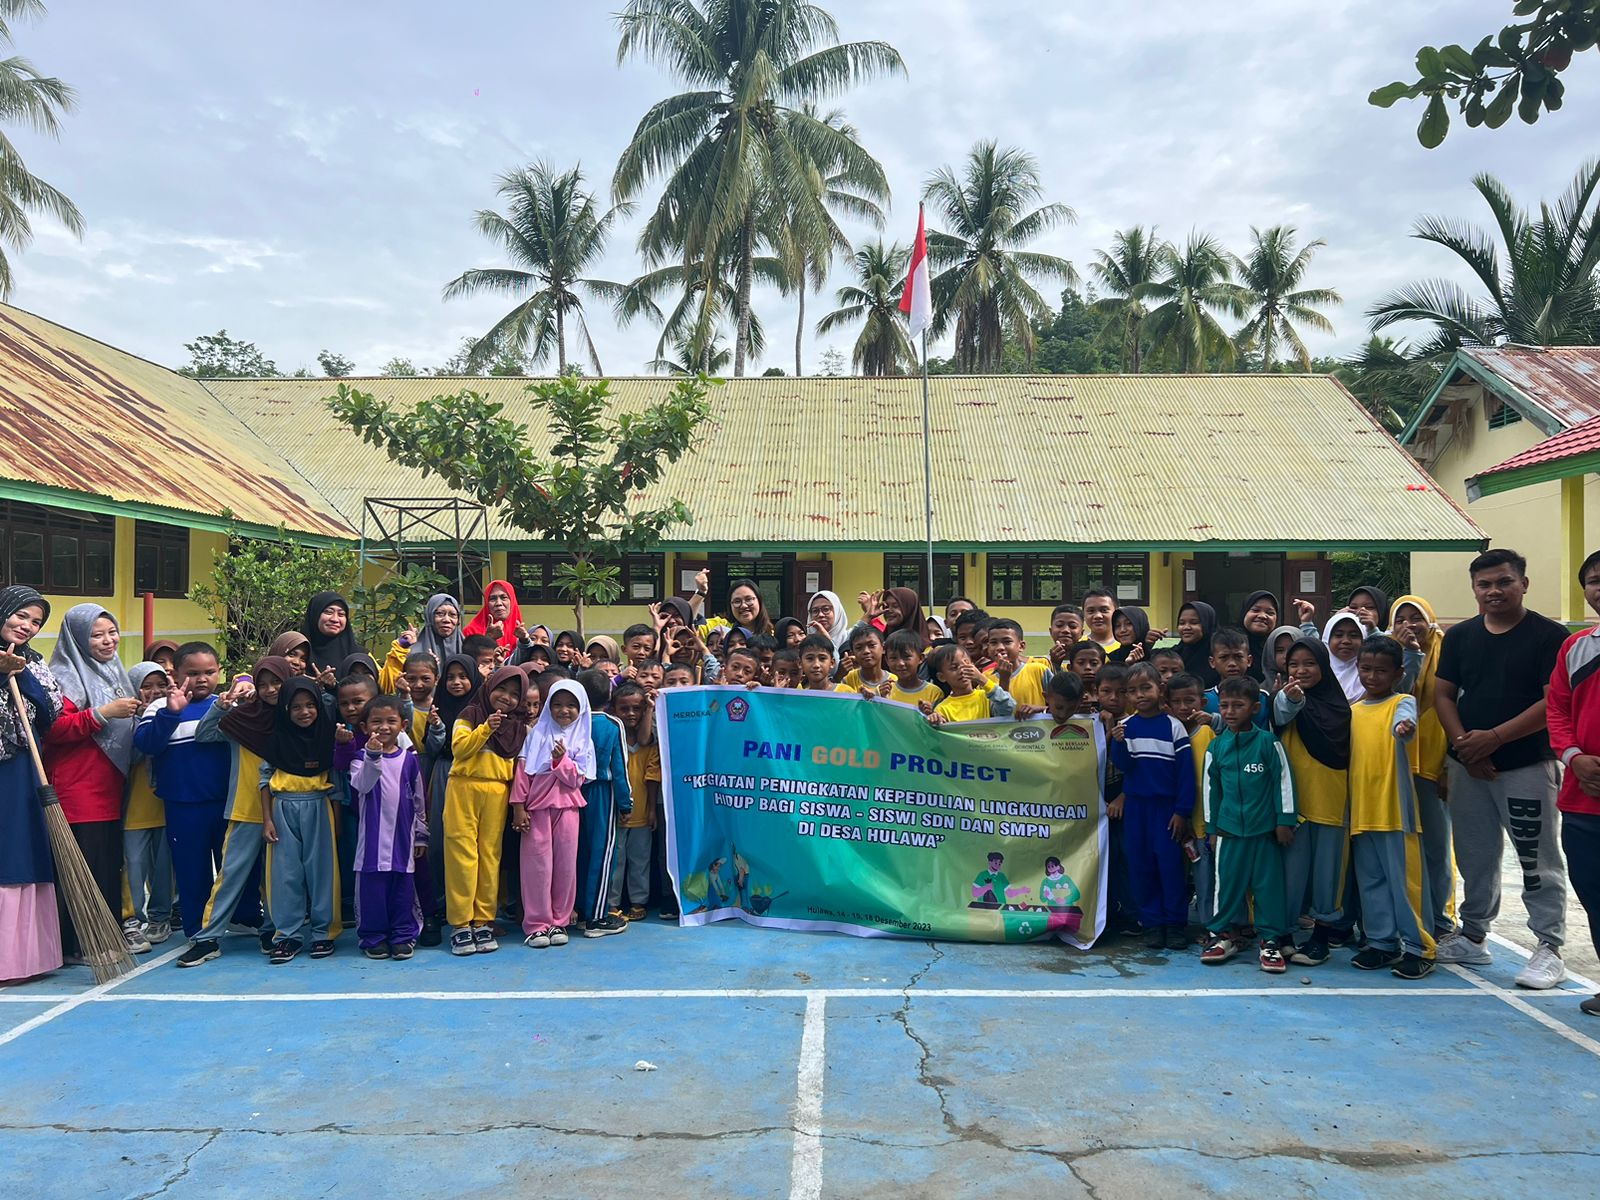 Pani Gold Project Gandeng Siswa-Siswi Bersihkan Lingkungan Sekolah 